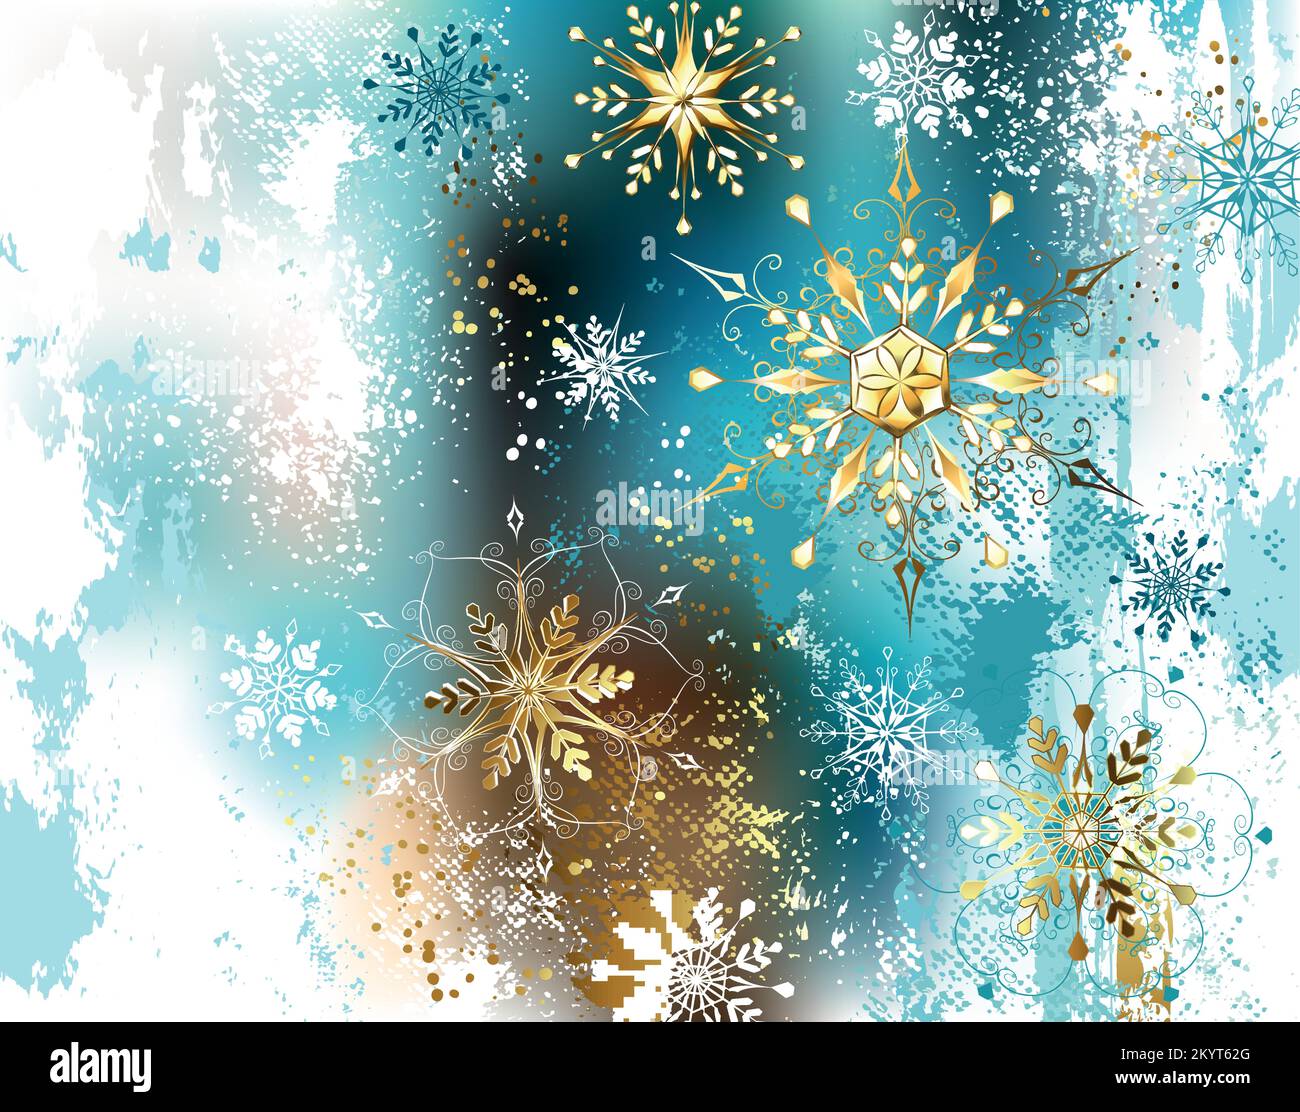 Weihnachten, Winterhintergrund, blau, weiß, goldene Farbe mit Gold, glänzend, schimmernde Schneeflocken. Goldene Schneeflocken. Stock Vektor